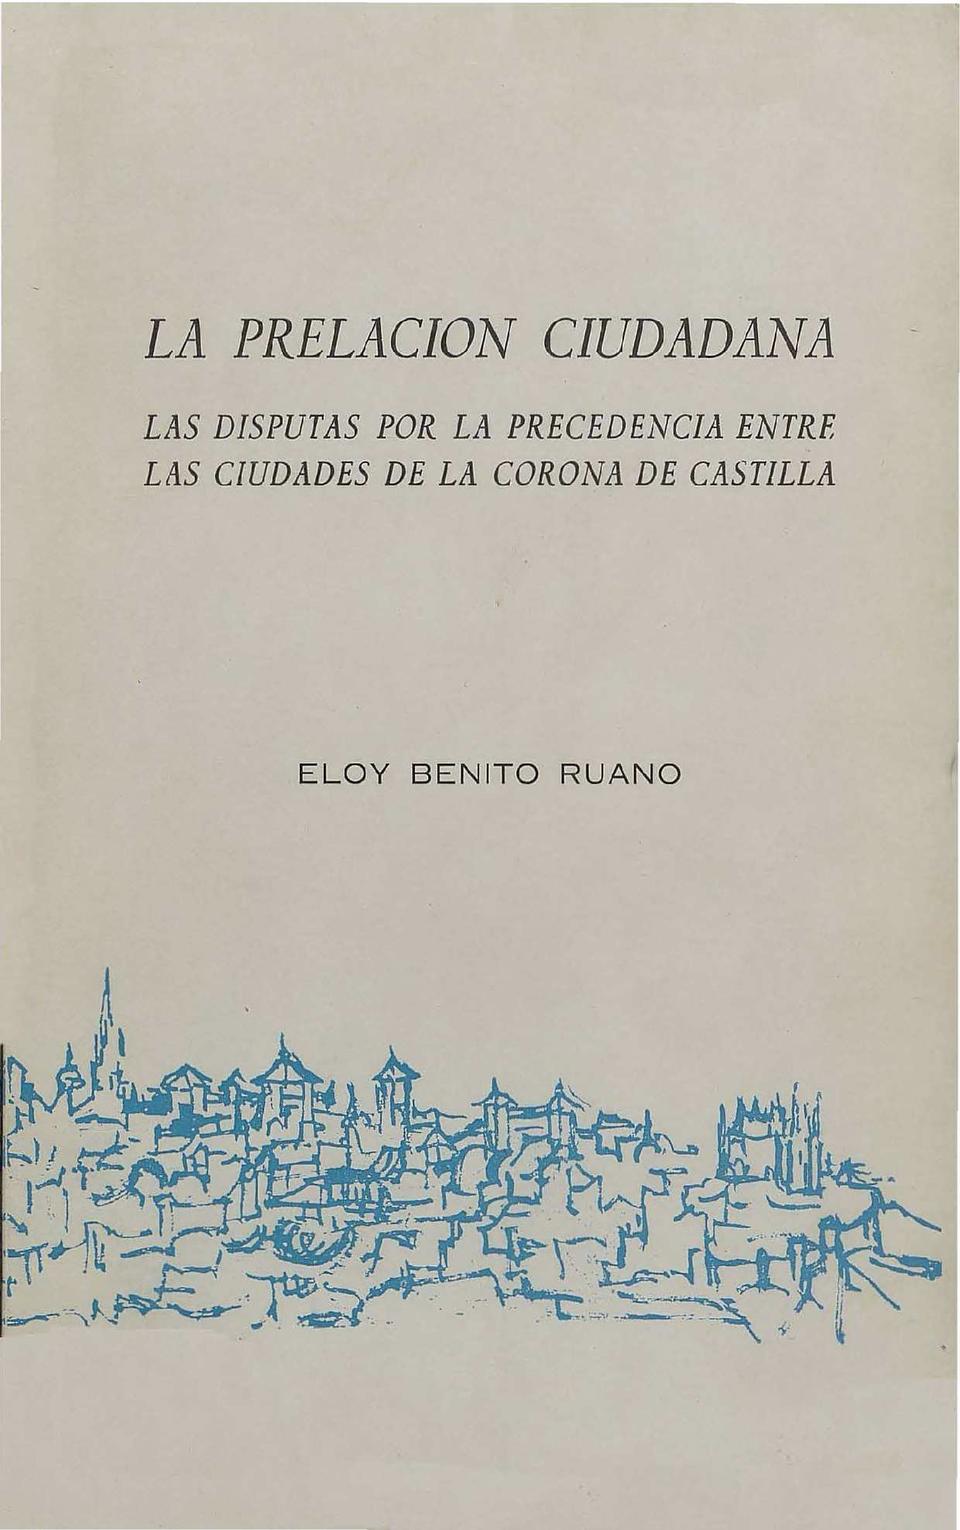 La prelación ciudadana : las disputas por la precedencia entre las ciudades de la Corona de Castilla / Eloy Benito Ruano.-. [Monografía]